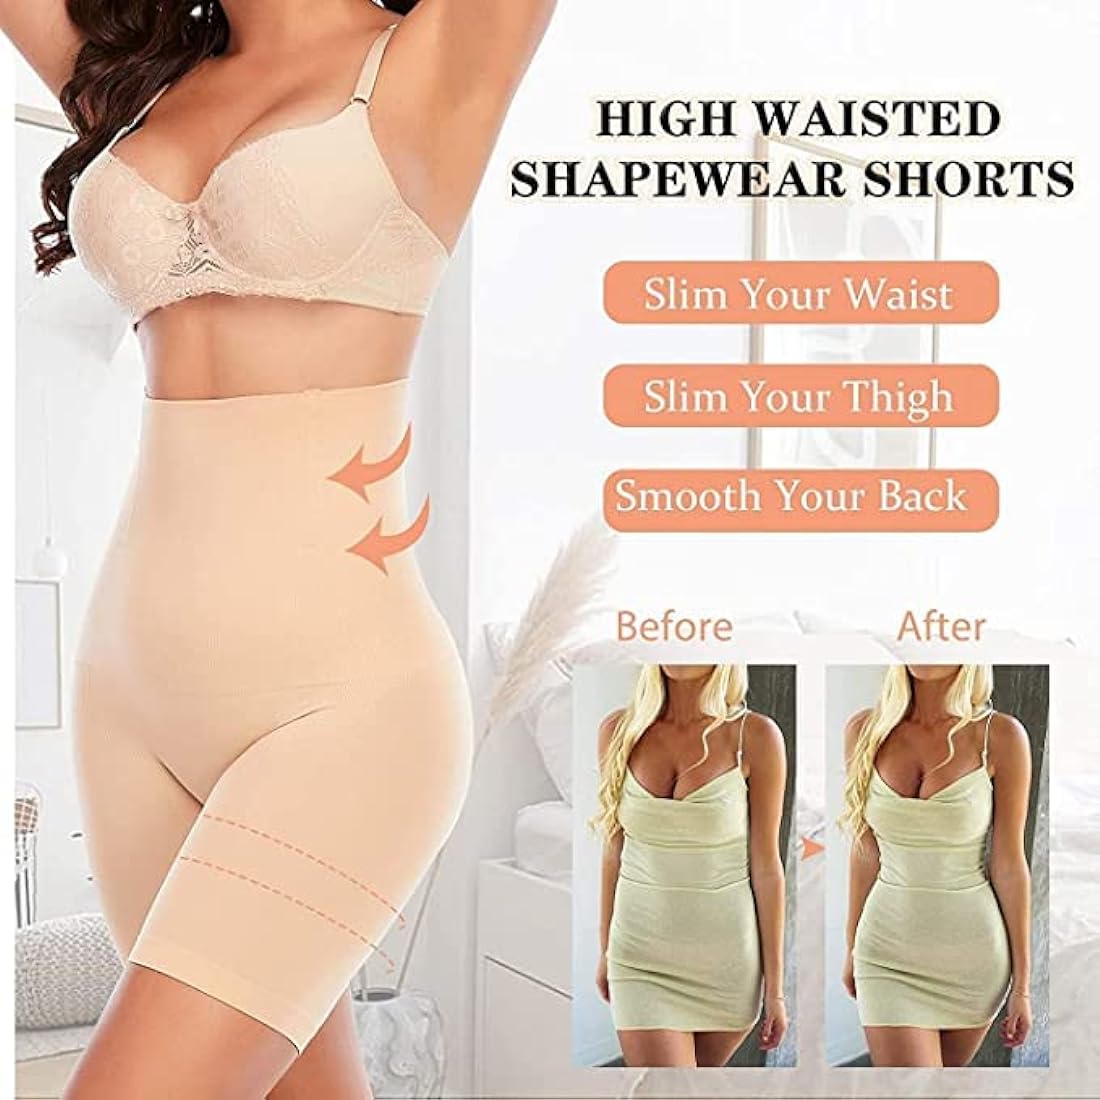 4-in-1 Shaper Quick Slim Shape Wear Tummy, Thighs, Hips - Shapewear Body Shaper🔥BUY 1 GET 1 FREE🔥